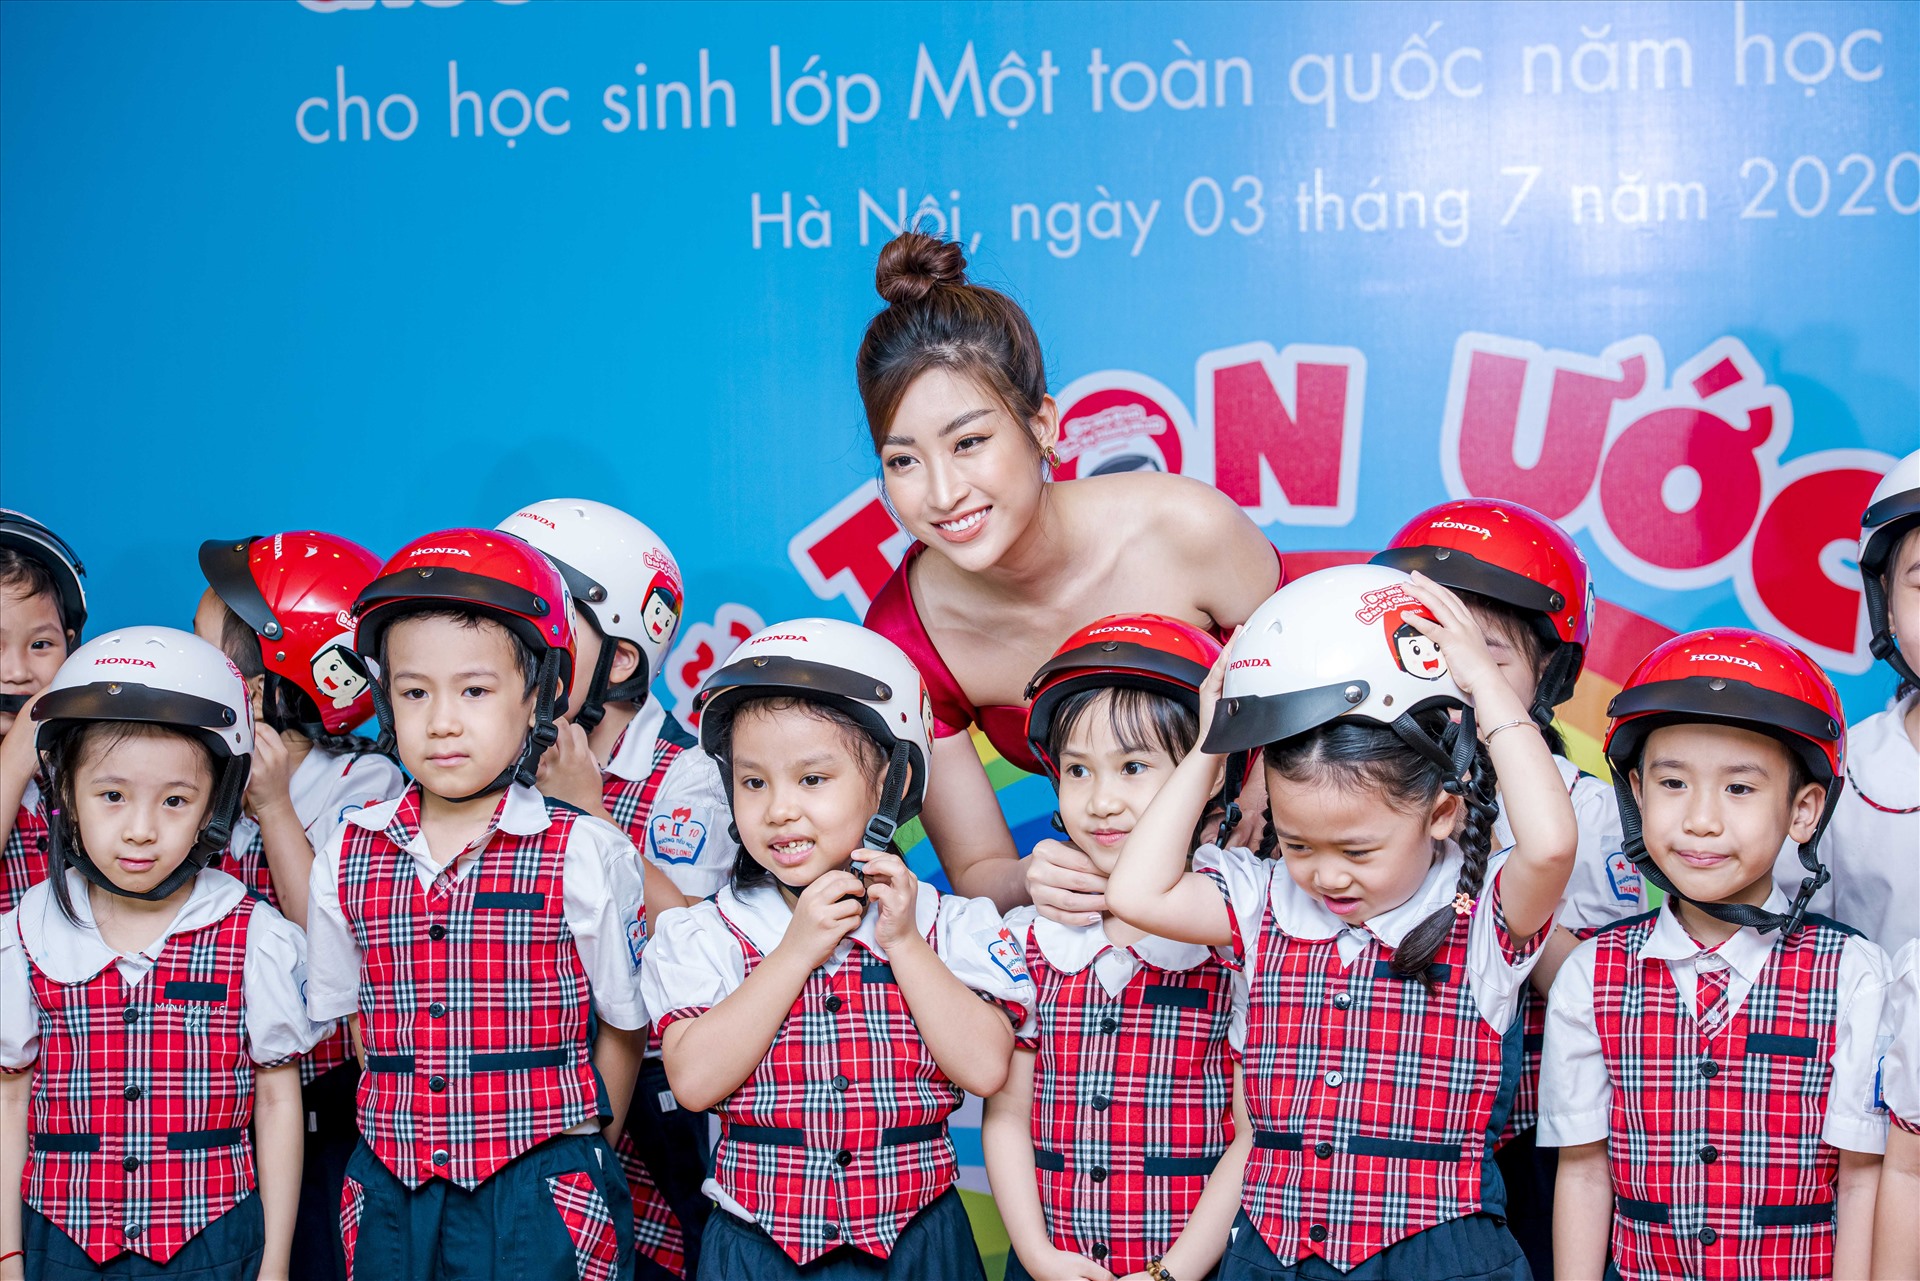 Hoa hậu Đỗ Mỹ Linh chia sẻ niềm vui cùng các em học sinh.